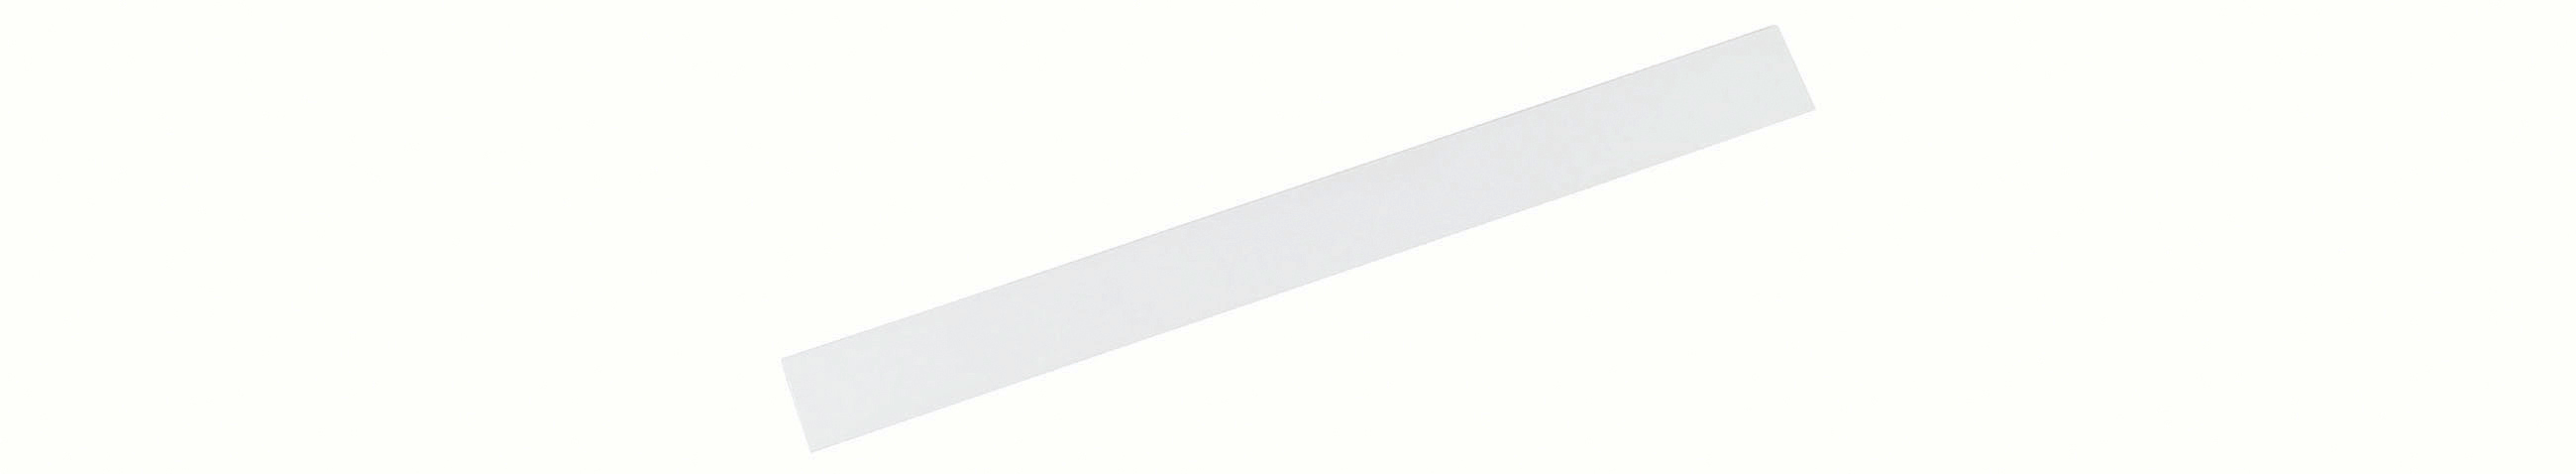 MAUL Ferro band standard 100cm 6207002 blanc blanc